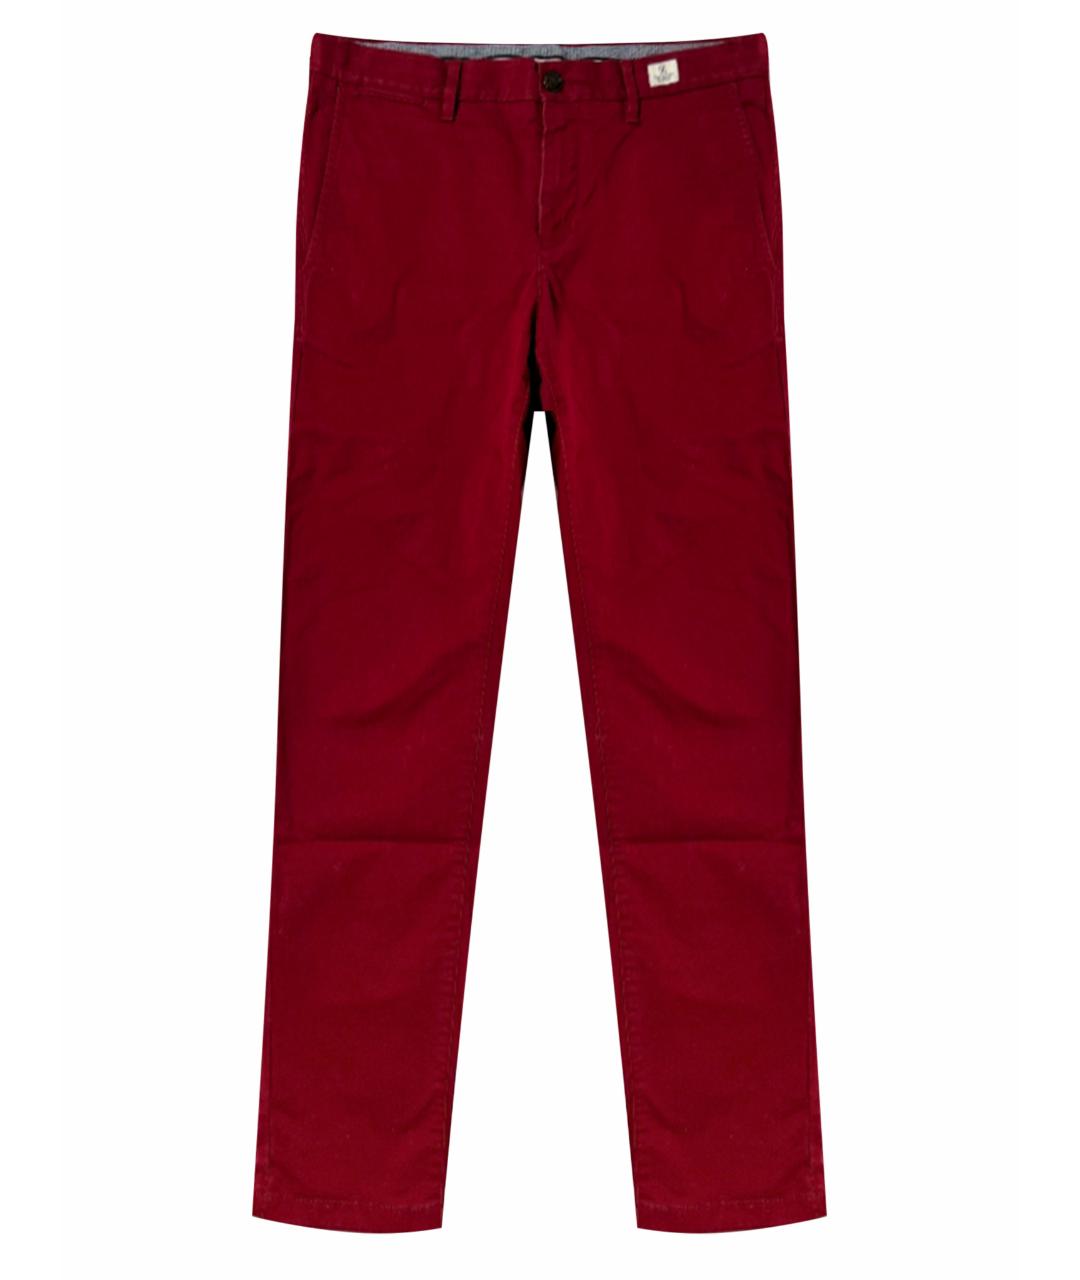 TOMMY HILFIGER Красные хлопковые брюки чинос, фото 1